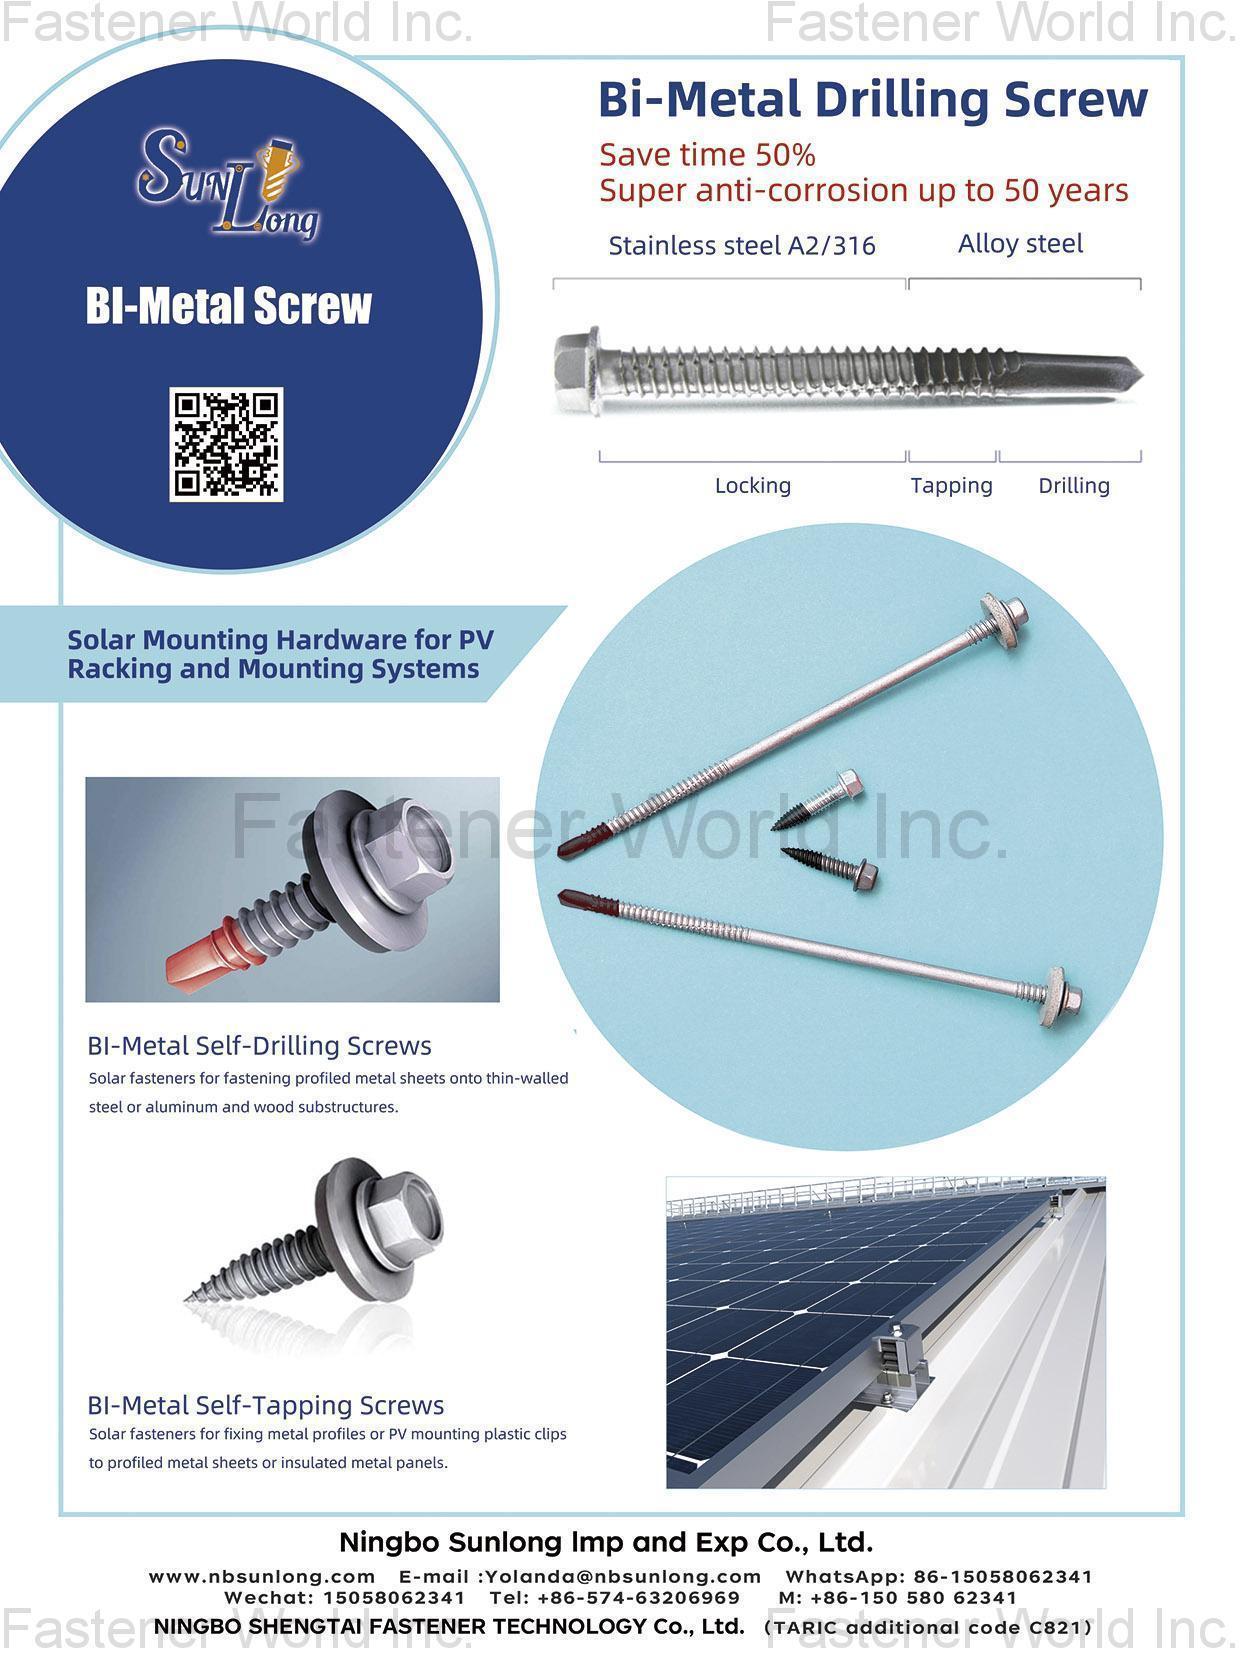 NINGBO SUNLONG IMP AND EXP CO., LTD. , Bi-Metal Screws, Bi-Metal Self-Drilling Screws, Bi-Metal Self-Tapping Screws